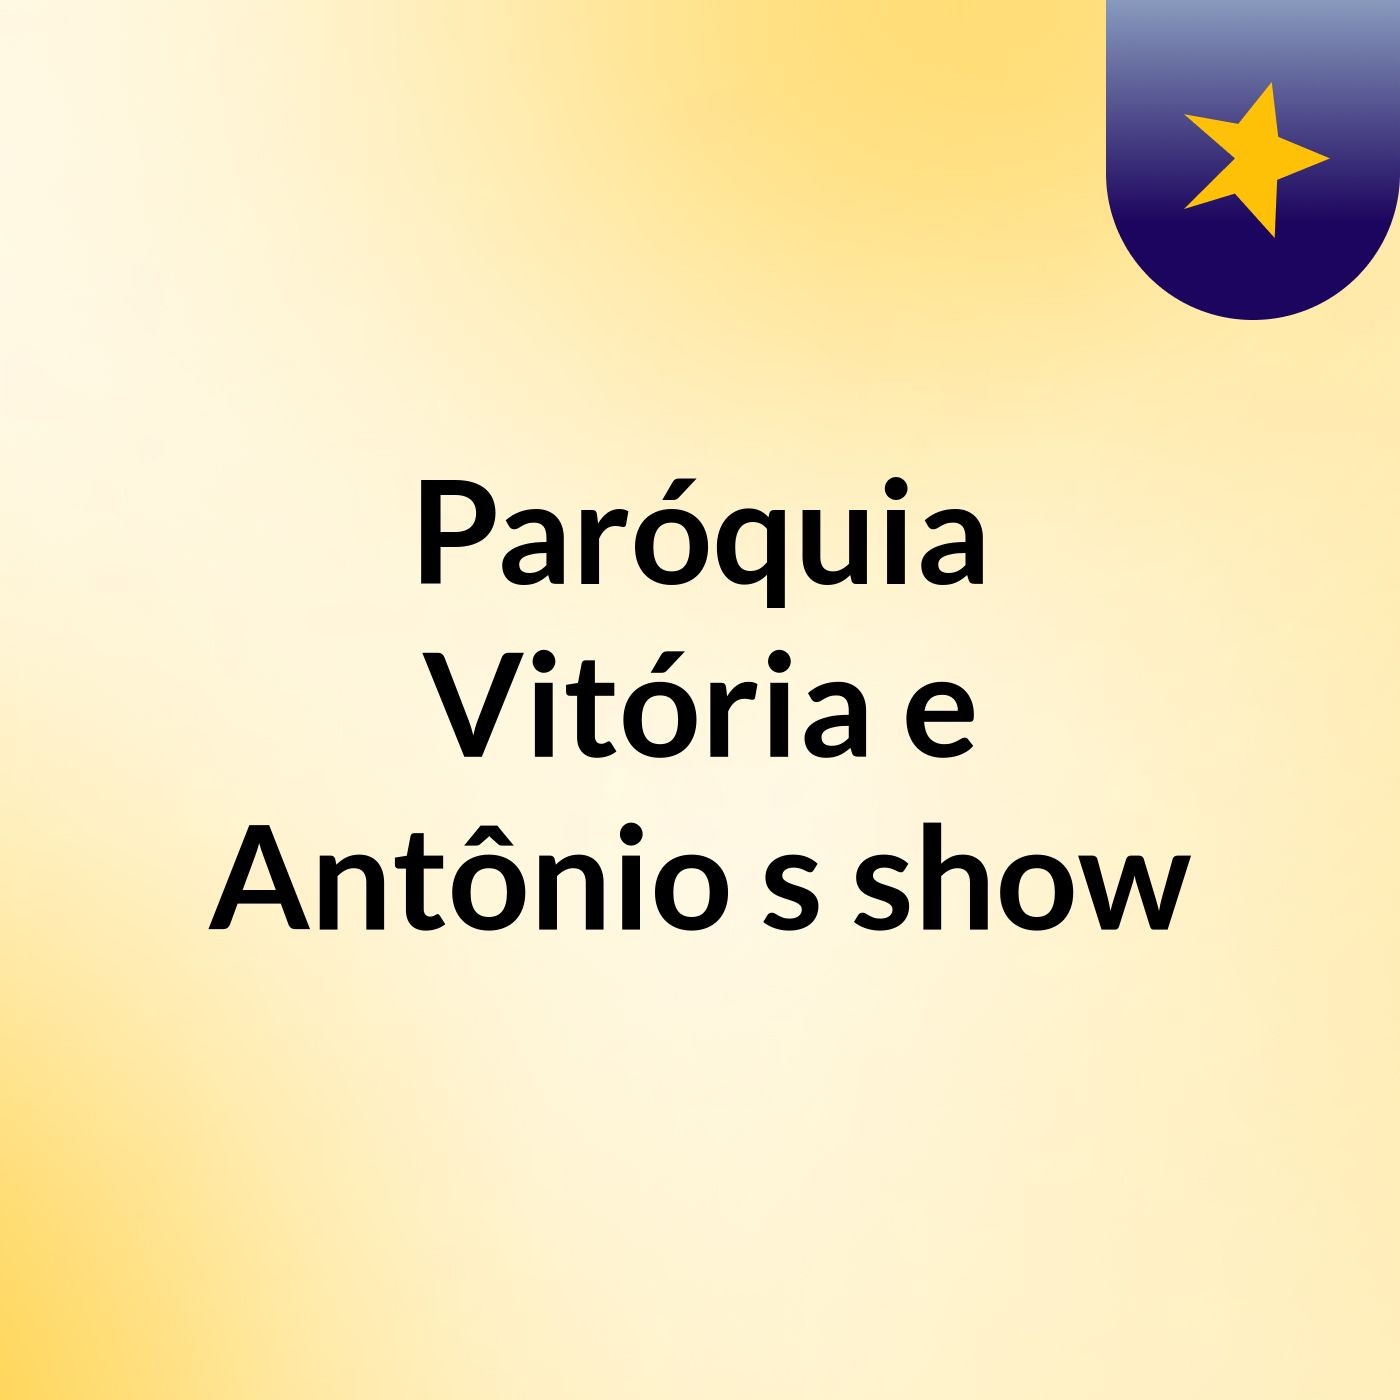 Paróquia Vitória e Antônio's show